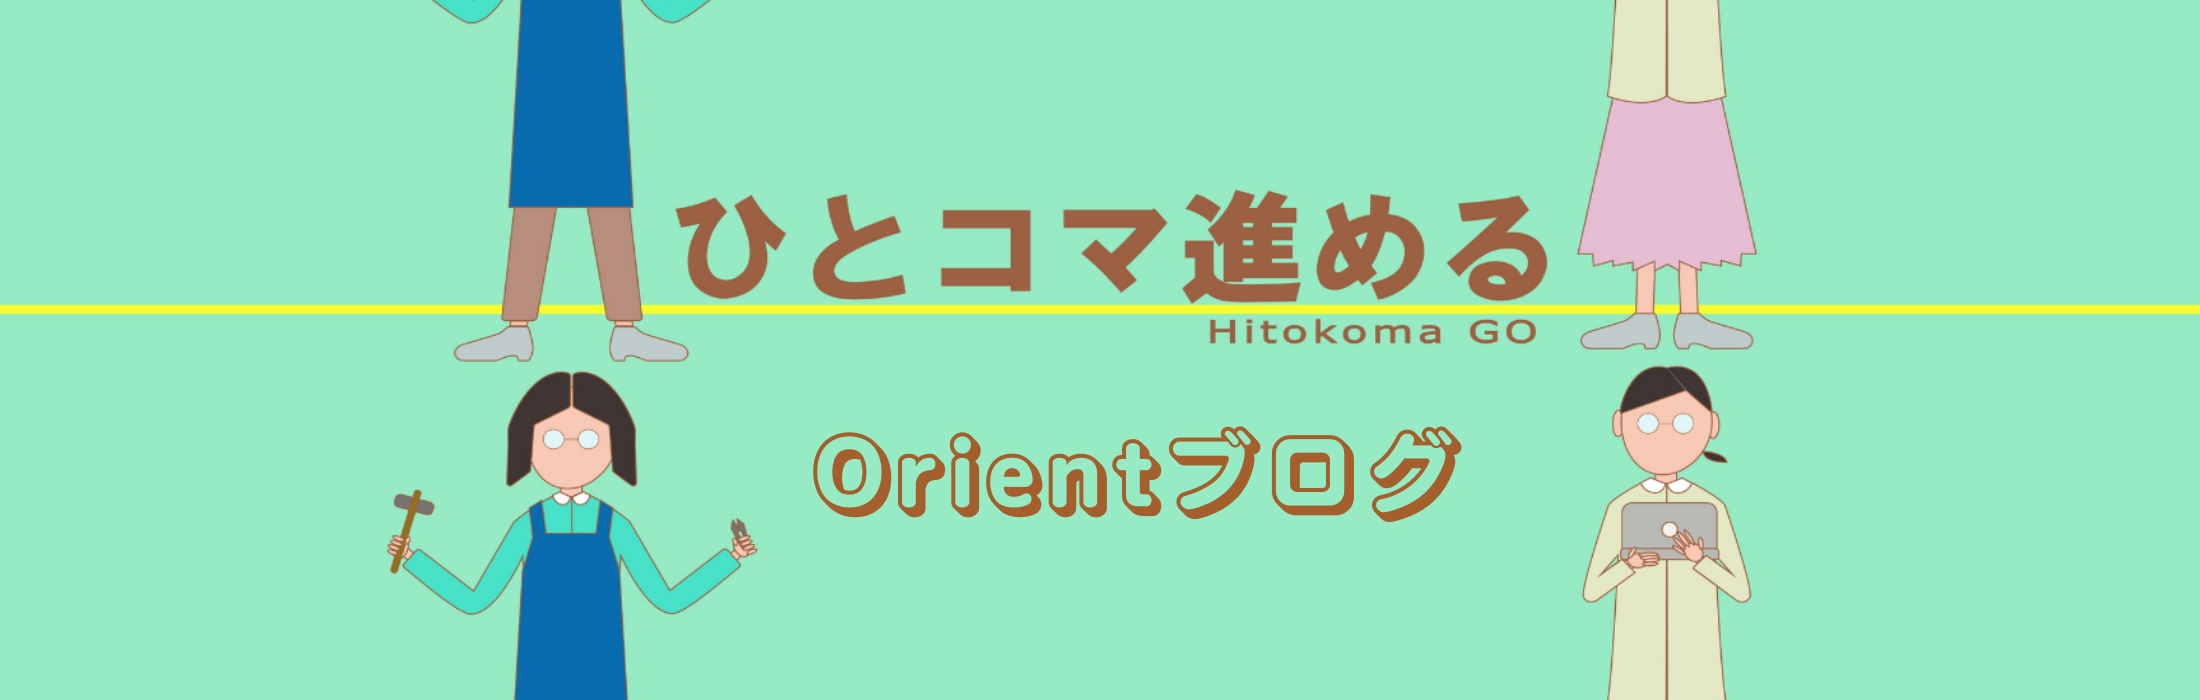 Orientブログ